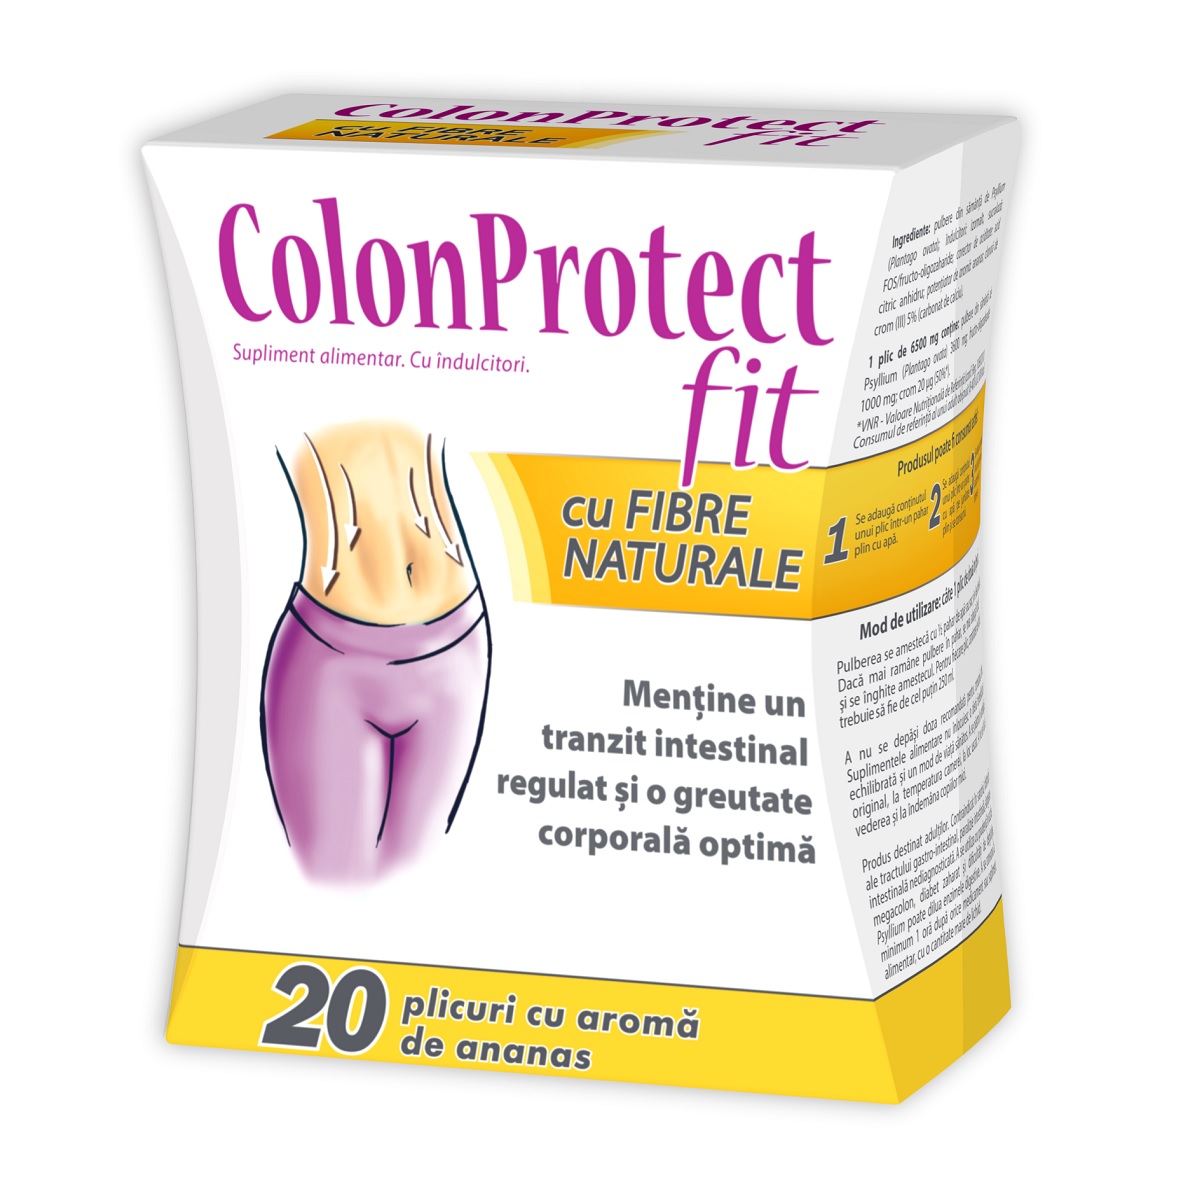 Secretele slabirii - Voi slabi - Lupta cu kilogramele: Colon protect te scapa de constipatie rapid